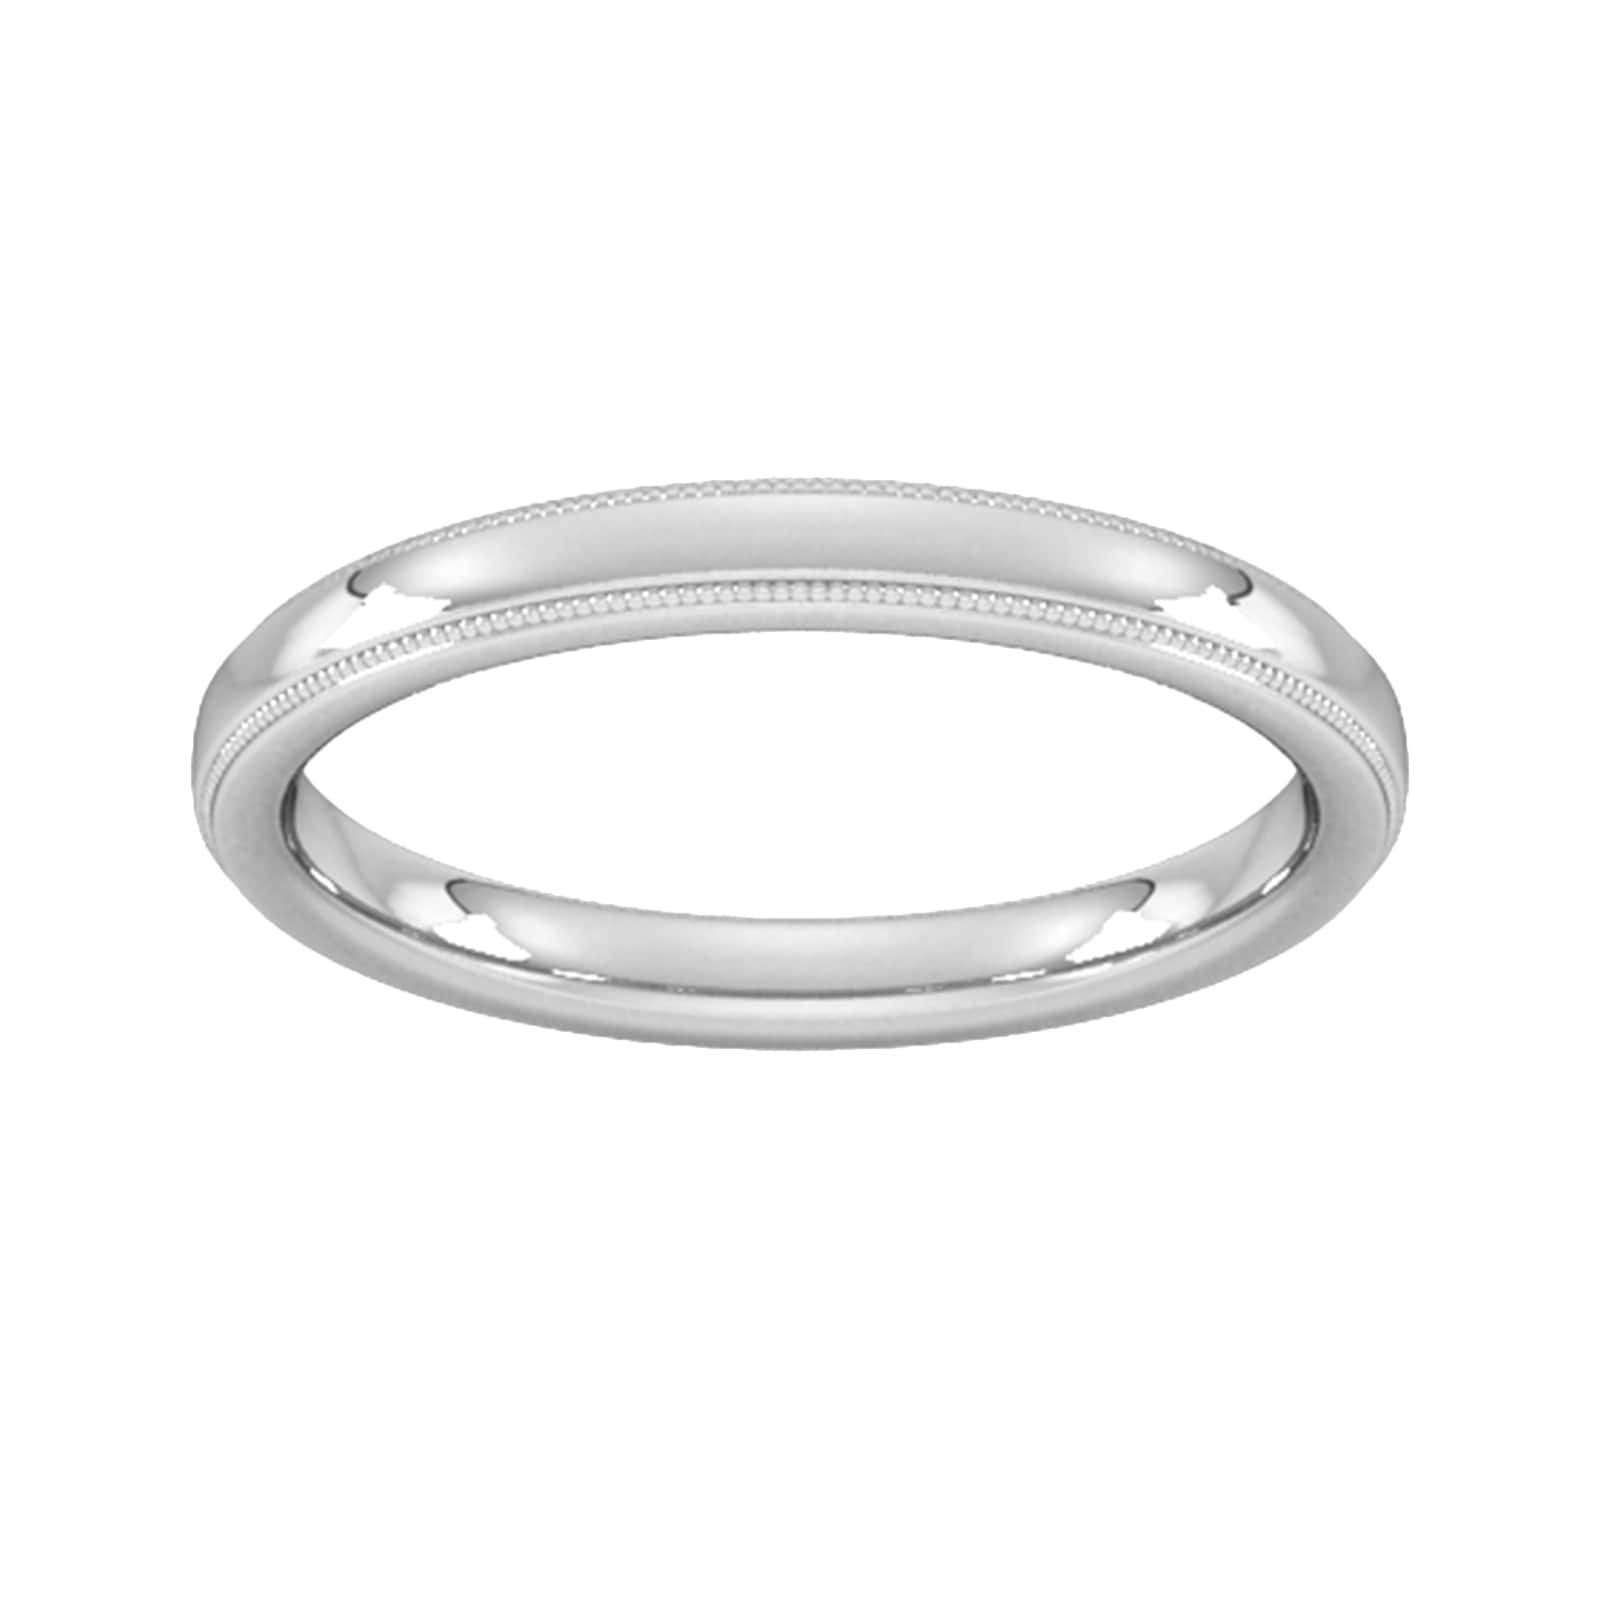 2.5mm Slight Court Standard Milgrain Edge Wedding Ring In 9 Carat White Gold - Ring Size G